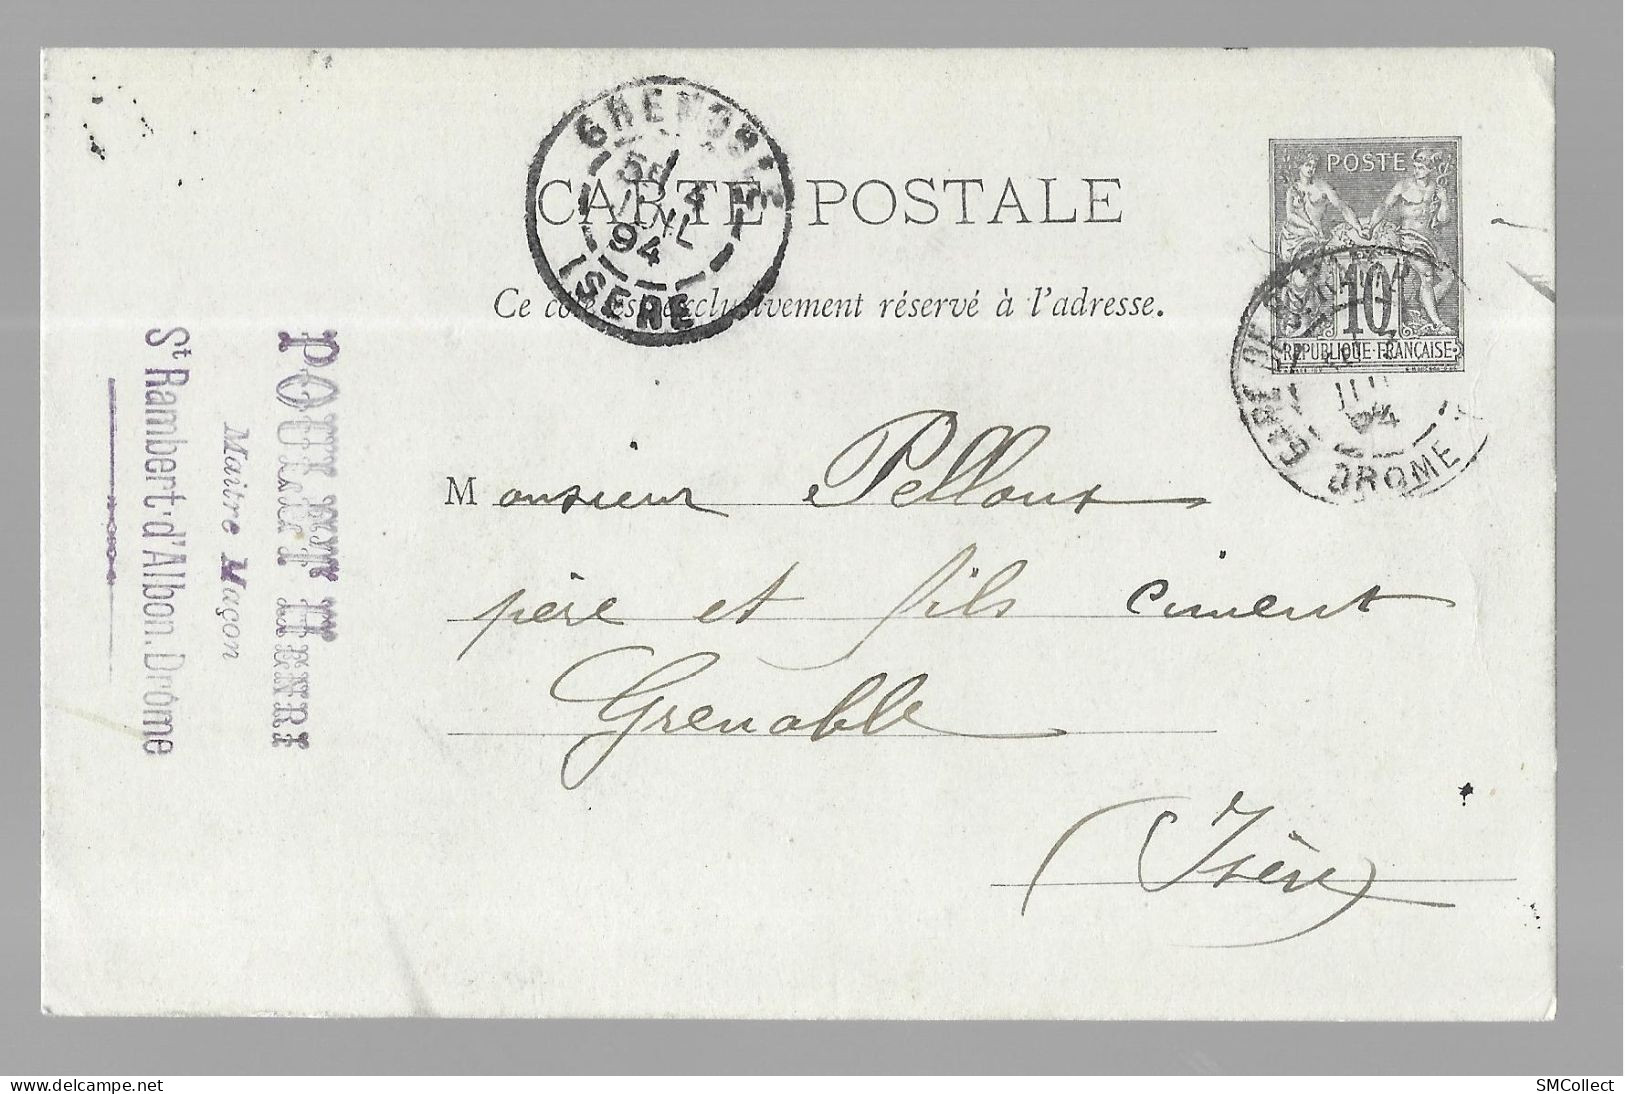 Entier Postal, Sage 10 Centimes Noir Voyagé En Juillet 1894, De Saint Rambert D'Albon Gare Vers Grenoble (13573) - Cartoline Postali E Su Commissione Privata TSC (ante 1995)